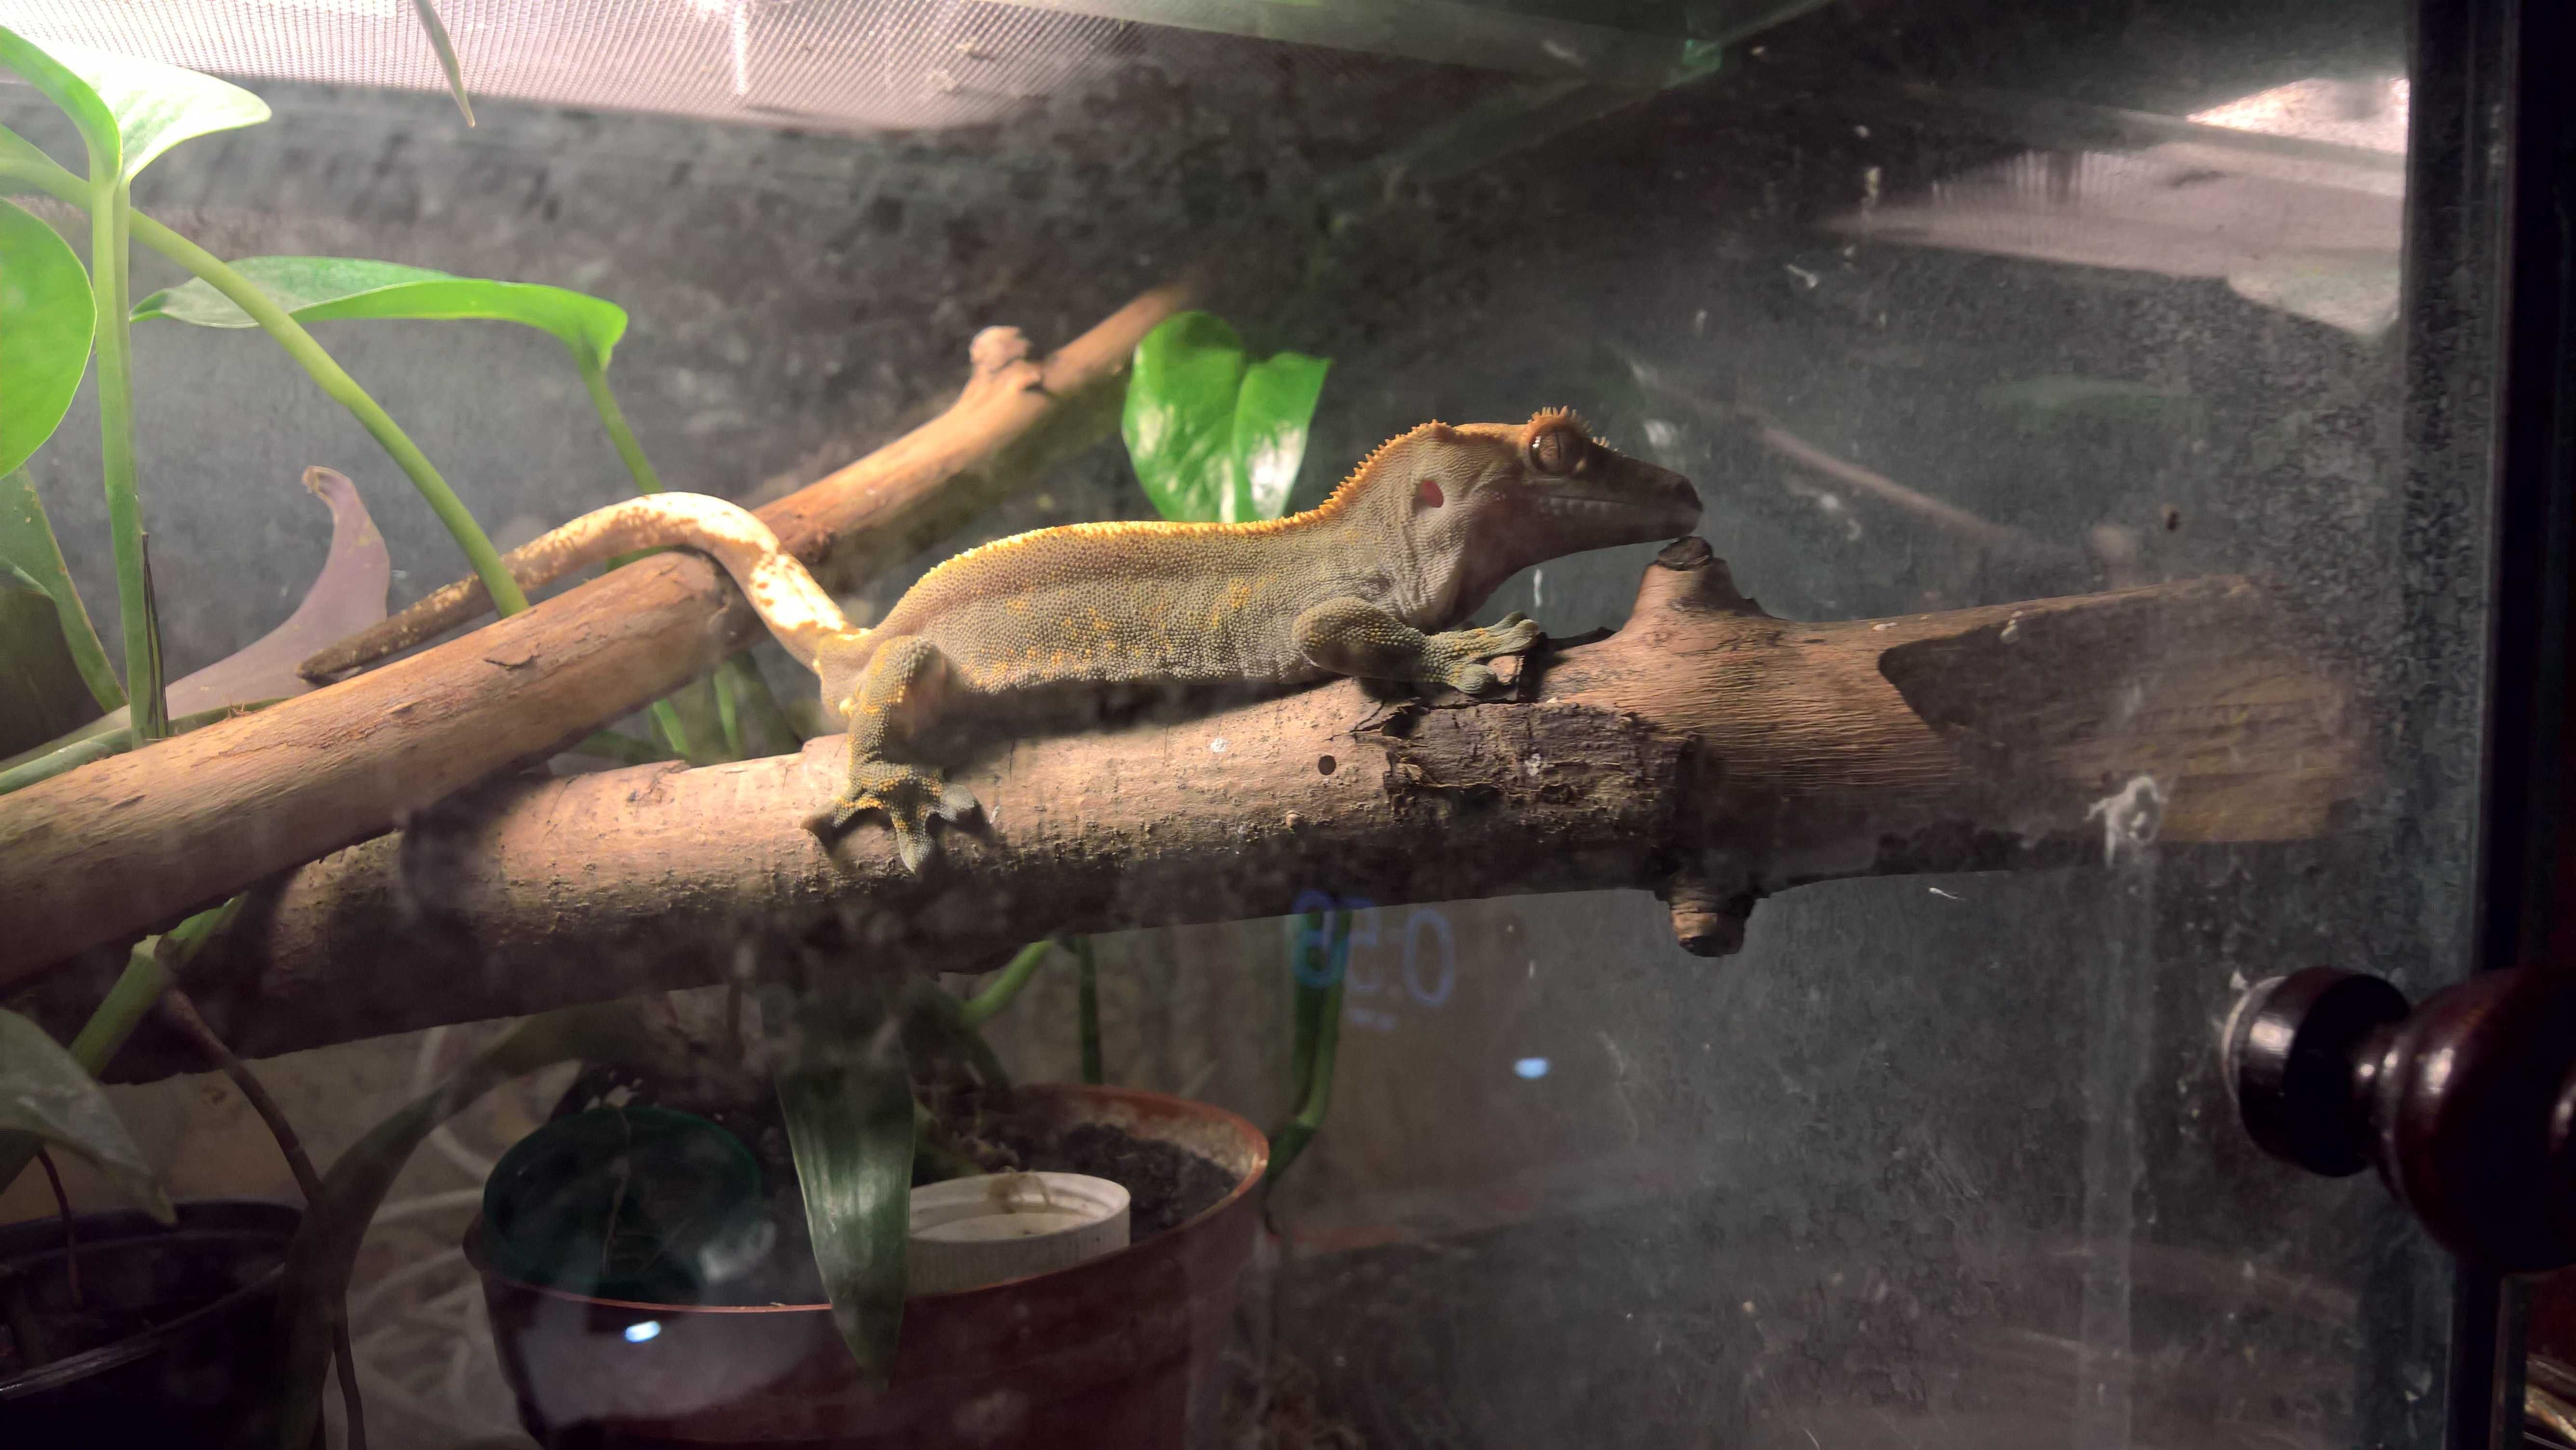 Реснитчатый геккон бананоед. Милый, мишкоподобный) 1.5 года,